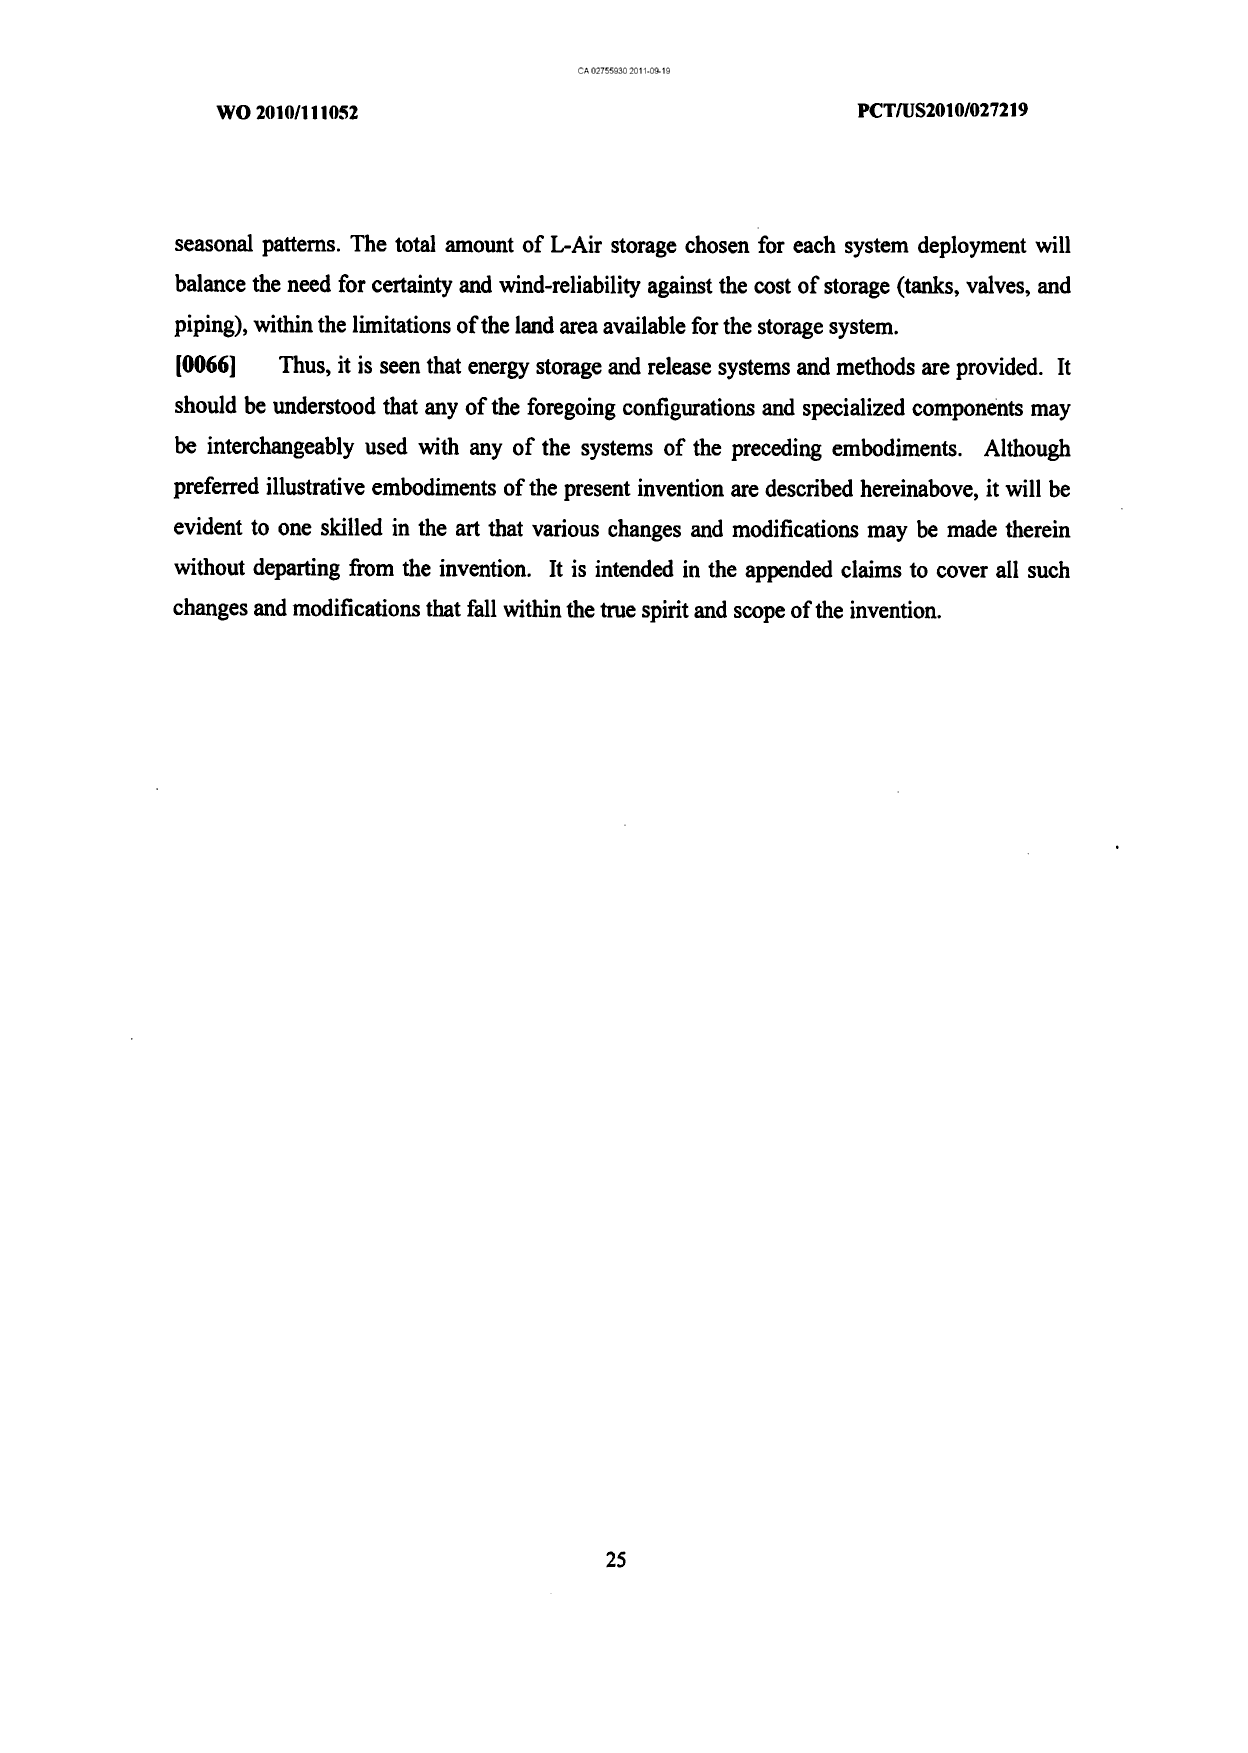 Canadian Patent Document 2755930. Description 20111211. Image 25 of 25